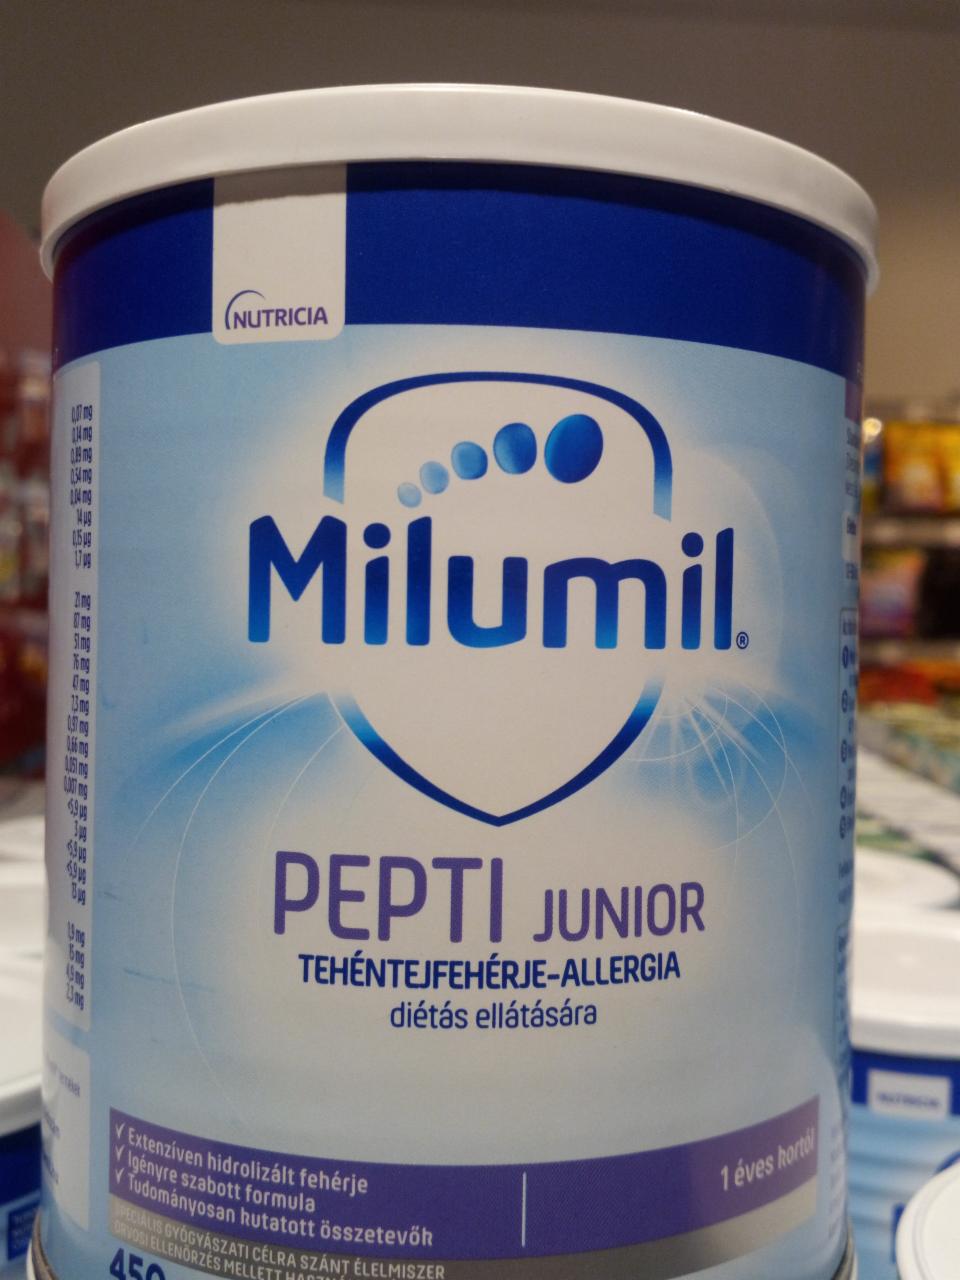 Képek - Pepti junior speciális gyógyászati célra szánt élelmiszer Milumil